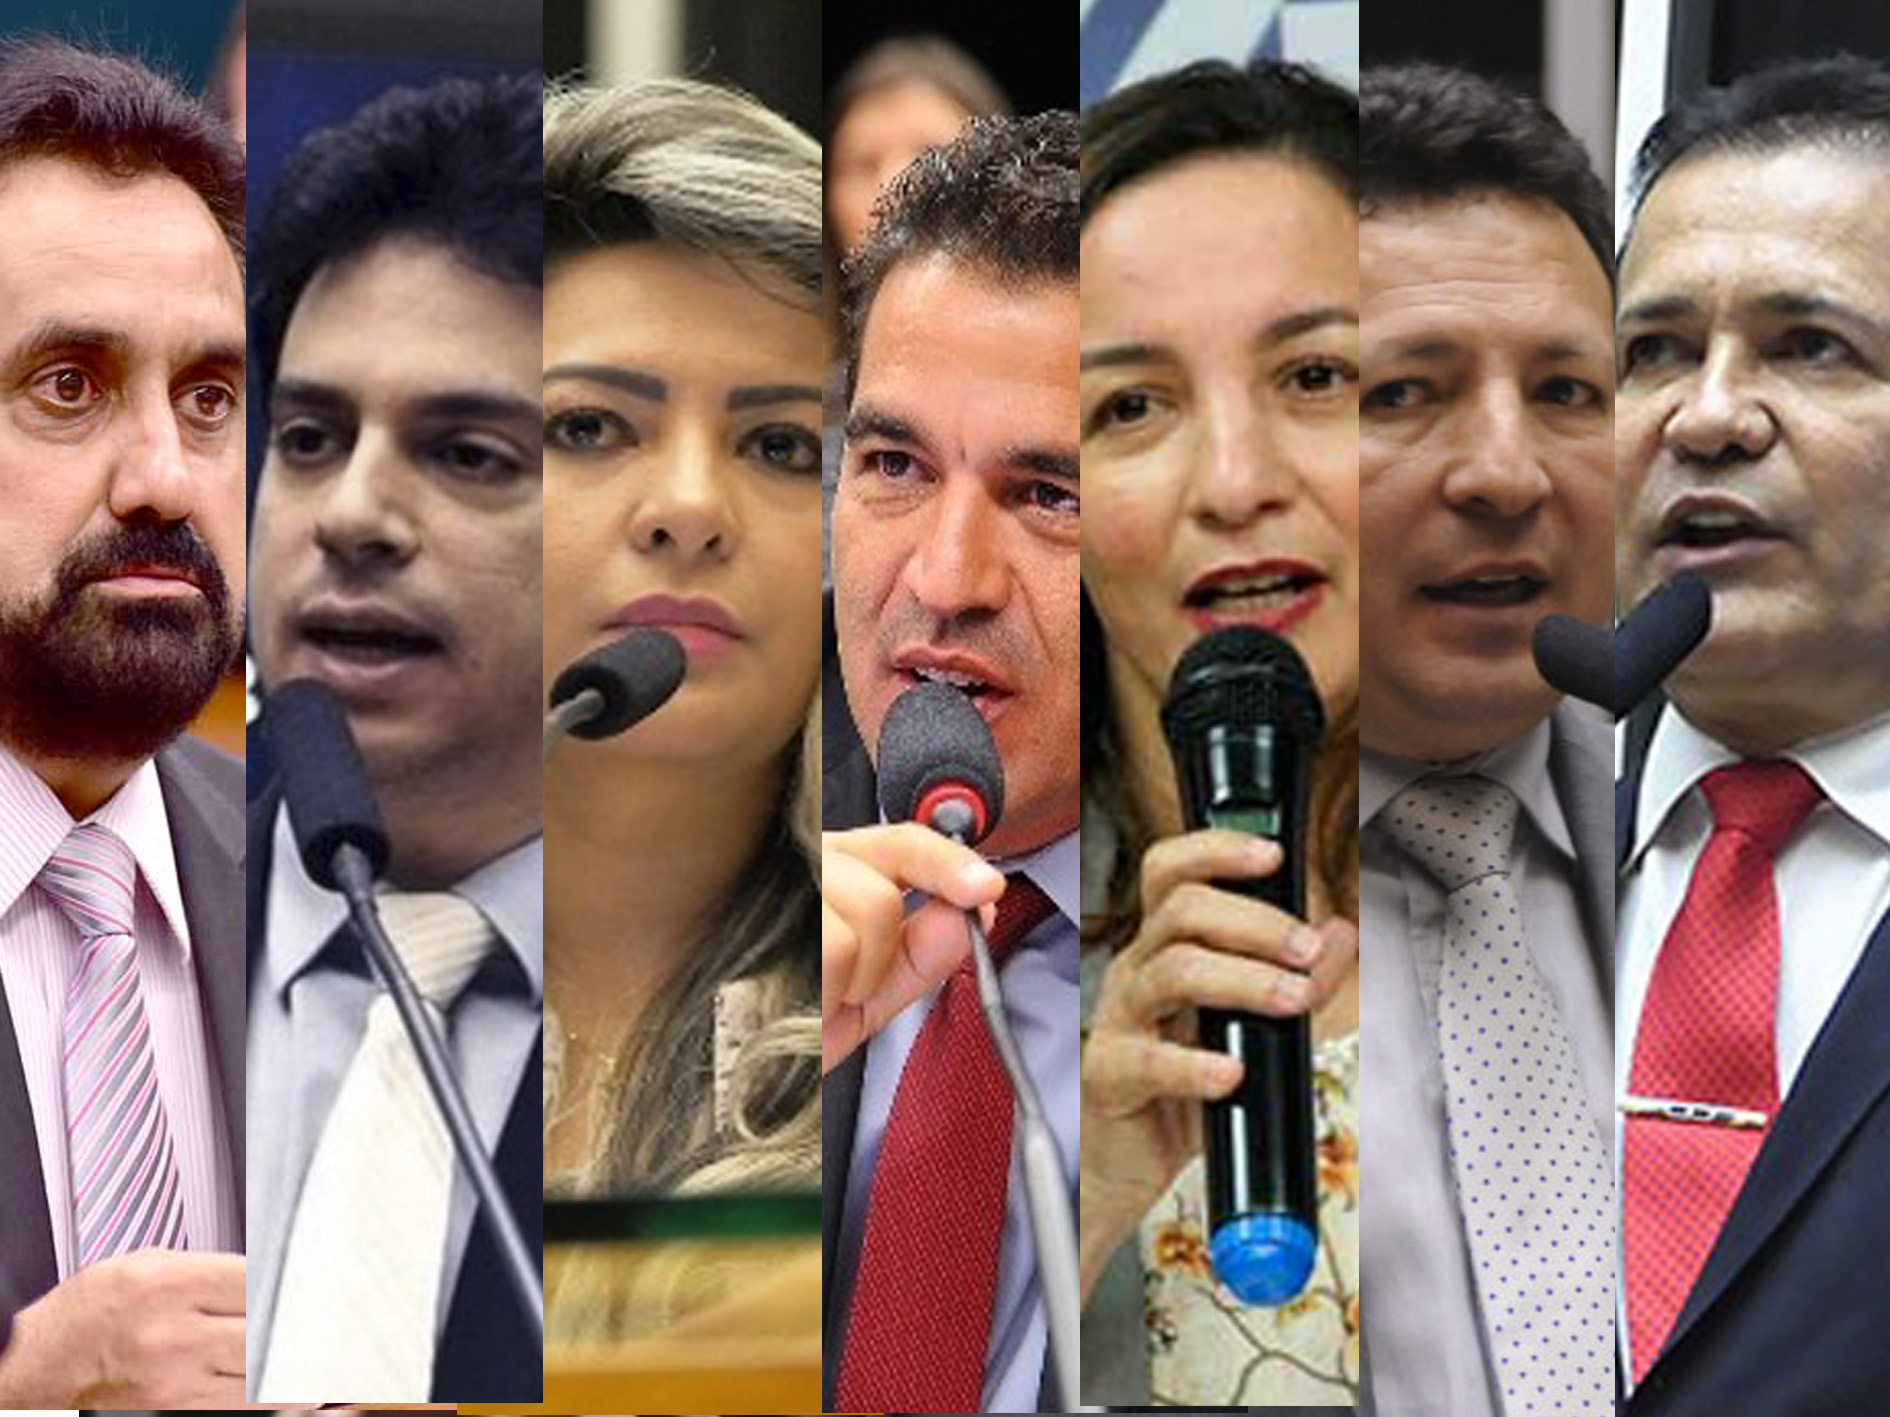 Sete dos oito deputados federais do Amapá vão ser candidatos novamente